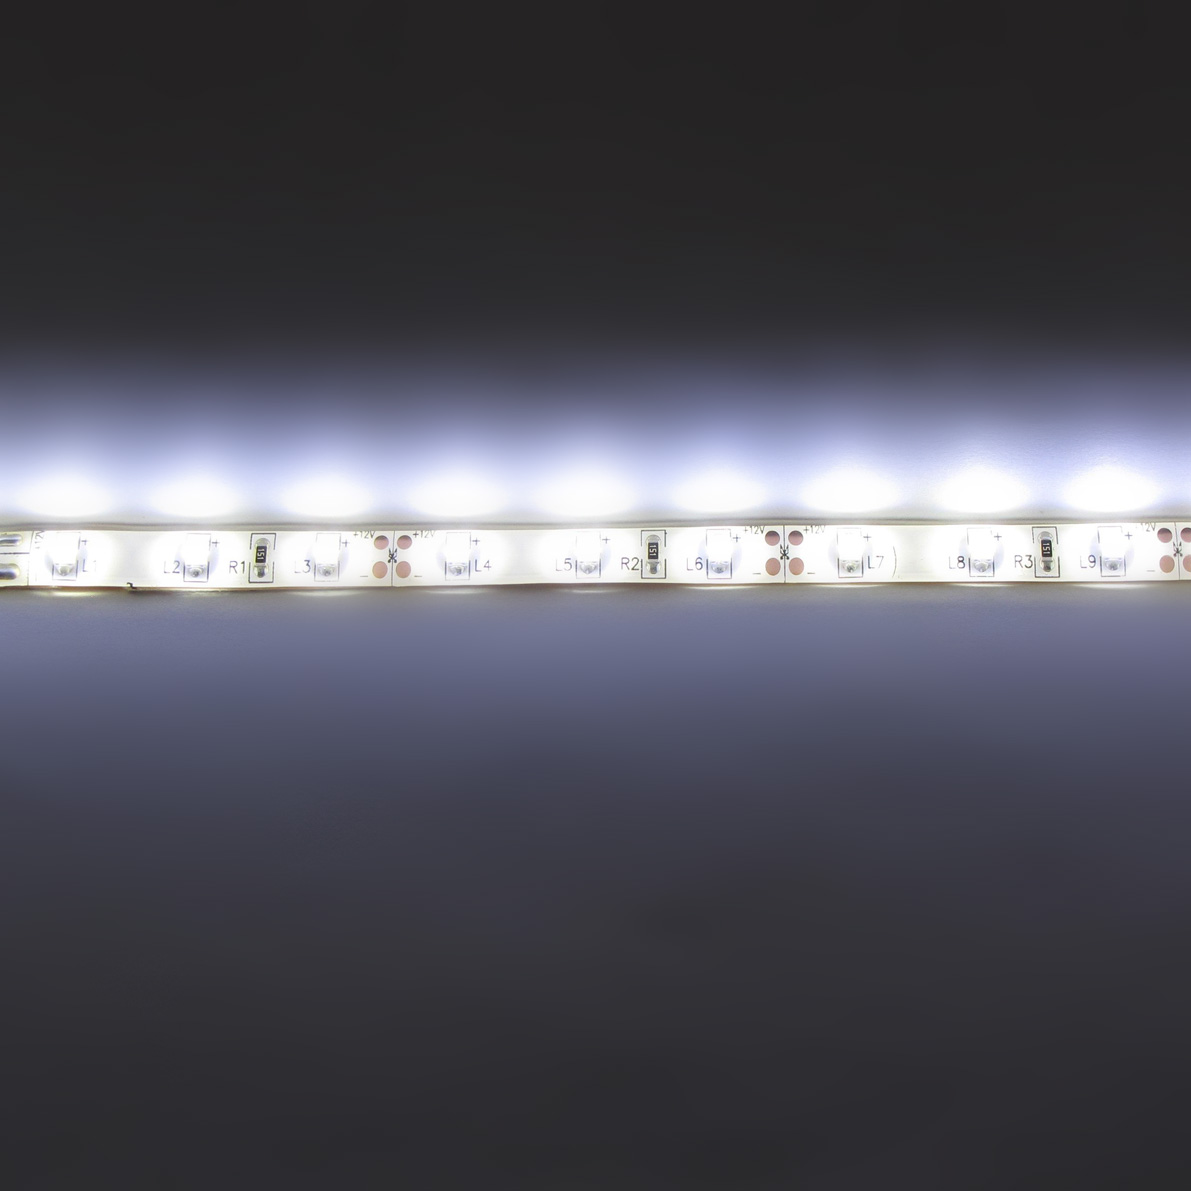 светодиодная лента standart pro class, 3528, 60 led/m, white, 12v, ip65, артикул 28663